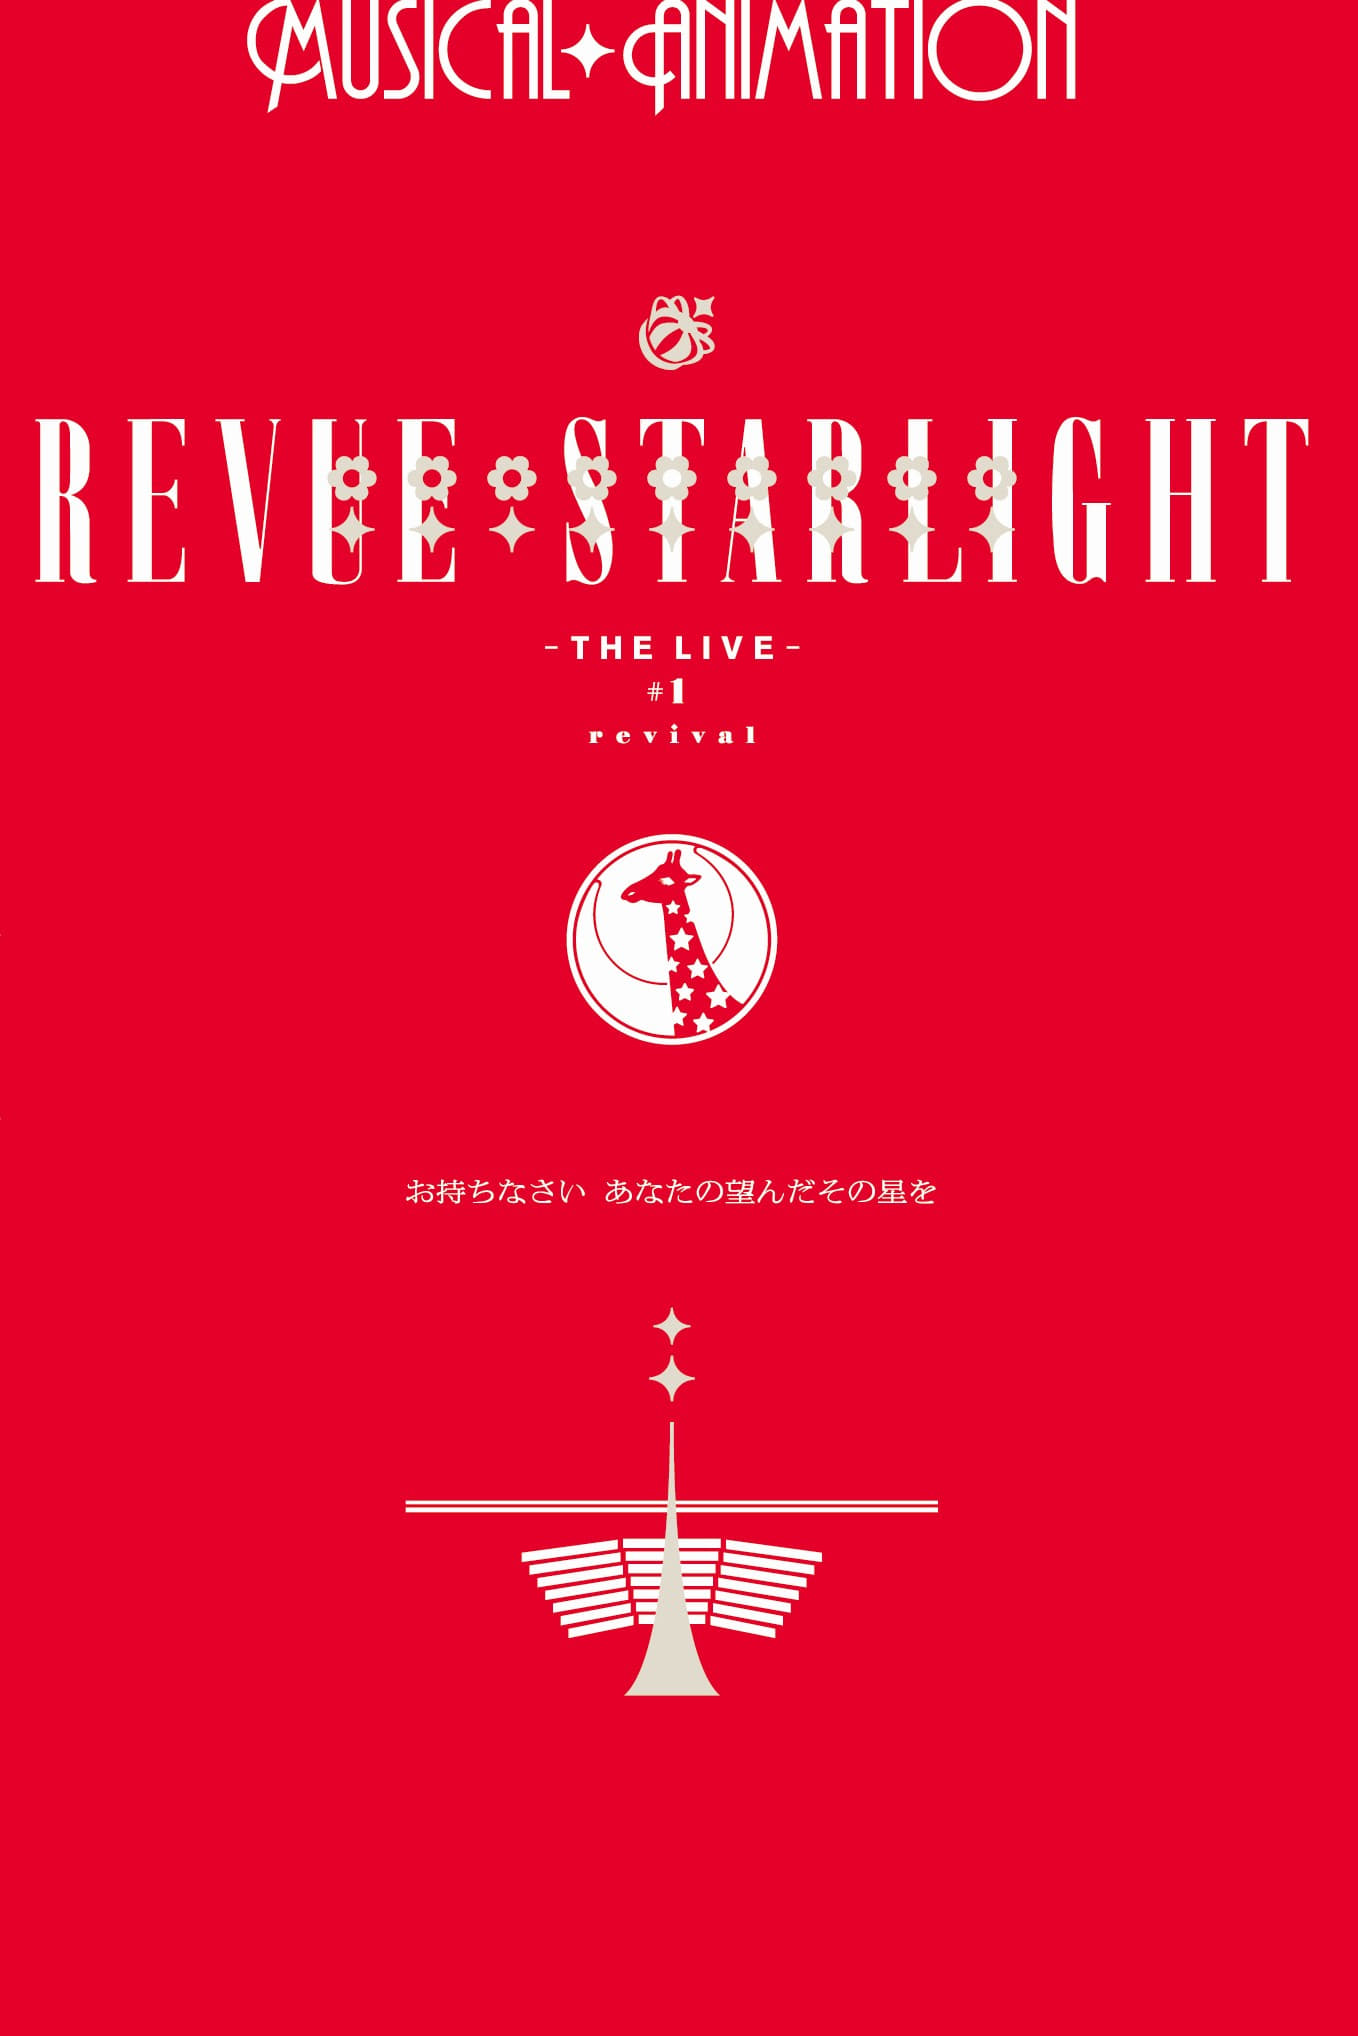 Revue Starlight ―The LIVE― #1 revival (2018)